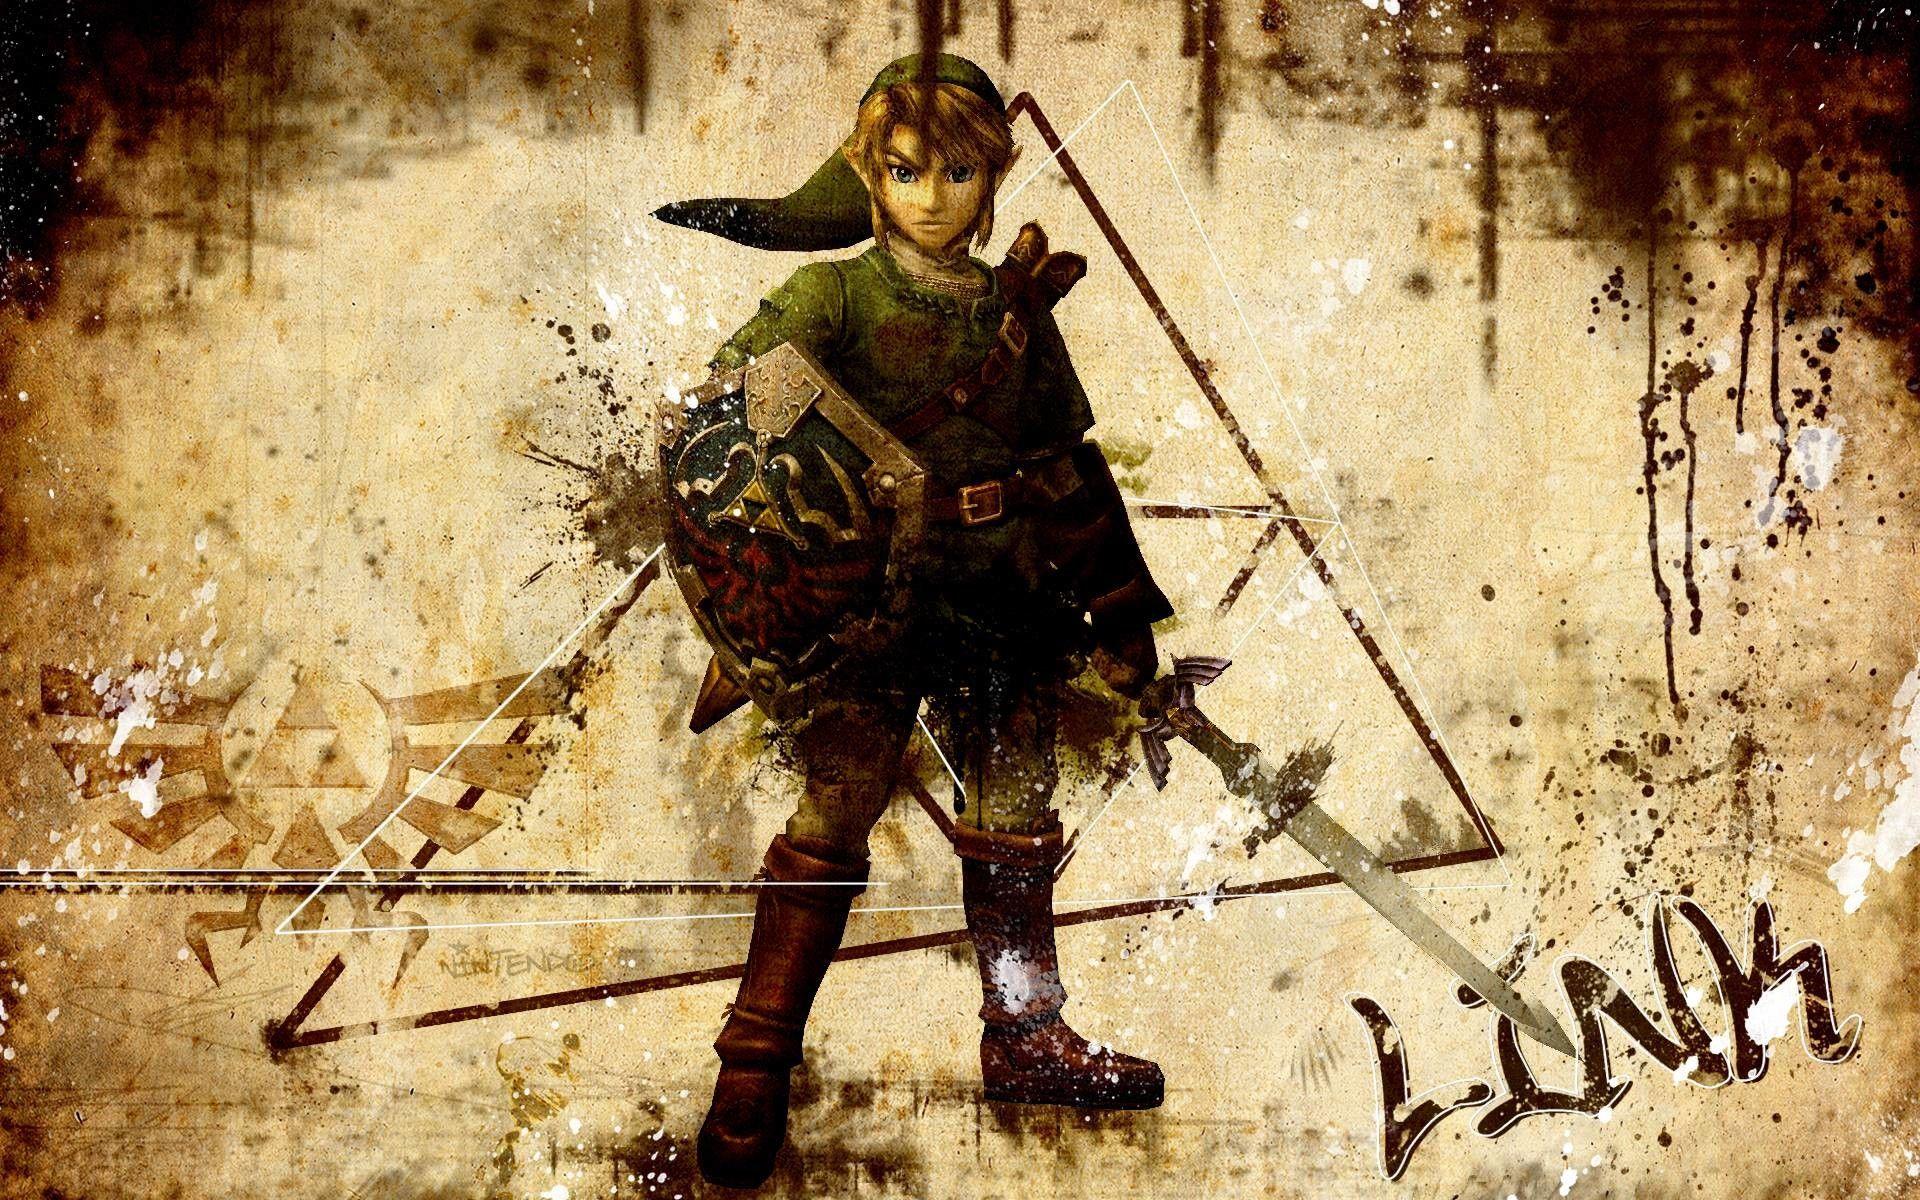 Link là một trong những nhân vật được yêu thích nhất của tựa game Legend Of Zelda. Chắc chắn rằng bạn sẽ không muốn bỏ lỡ những hình nền đẹp về Link được chúng tôi cung cấp. Với những hình ảnh tuyệt đẹp về Link, bạn sẽ cảm nhận được tình yêu và sự trung thành của nhân vật đầy bí ẩn này. Hãy truy cập ngay để tải hình nền về Link của mình.